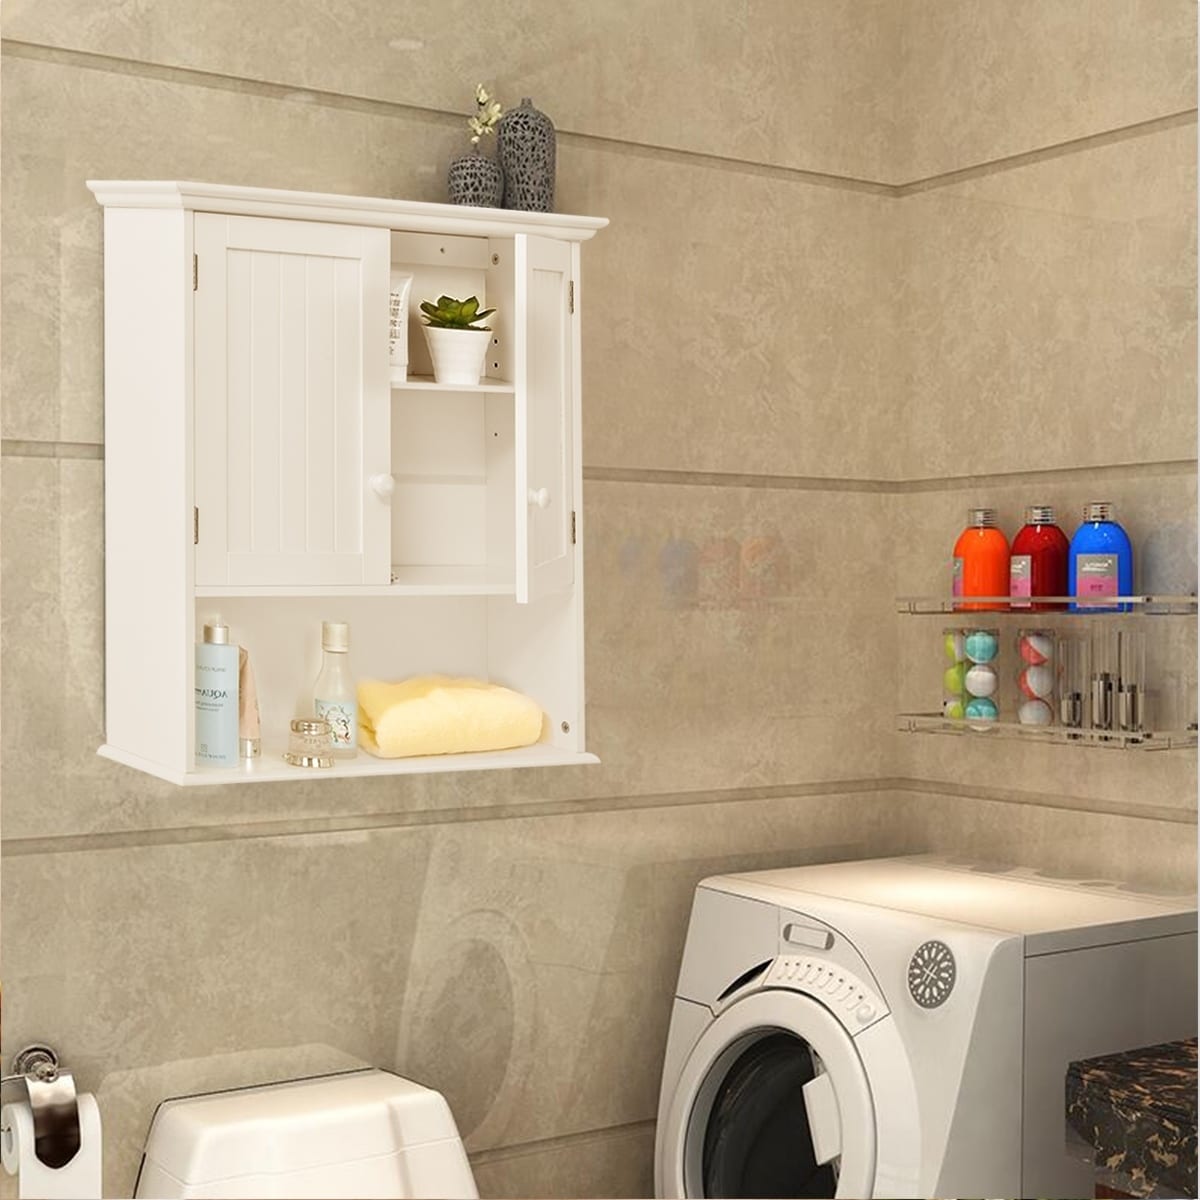 https://ak1.ostkcdn.com/images/products/30710297/Bathroom-Medicine-Cabinet-Wall-Mounted-Storage-Organizer-with-Shelf-N-A-282e2052-fd96-449d-823b-eb40ded73165.jpg